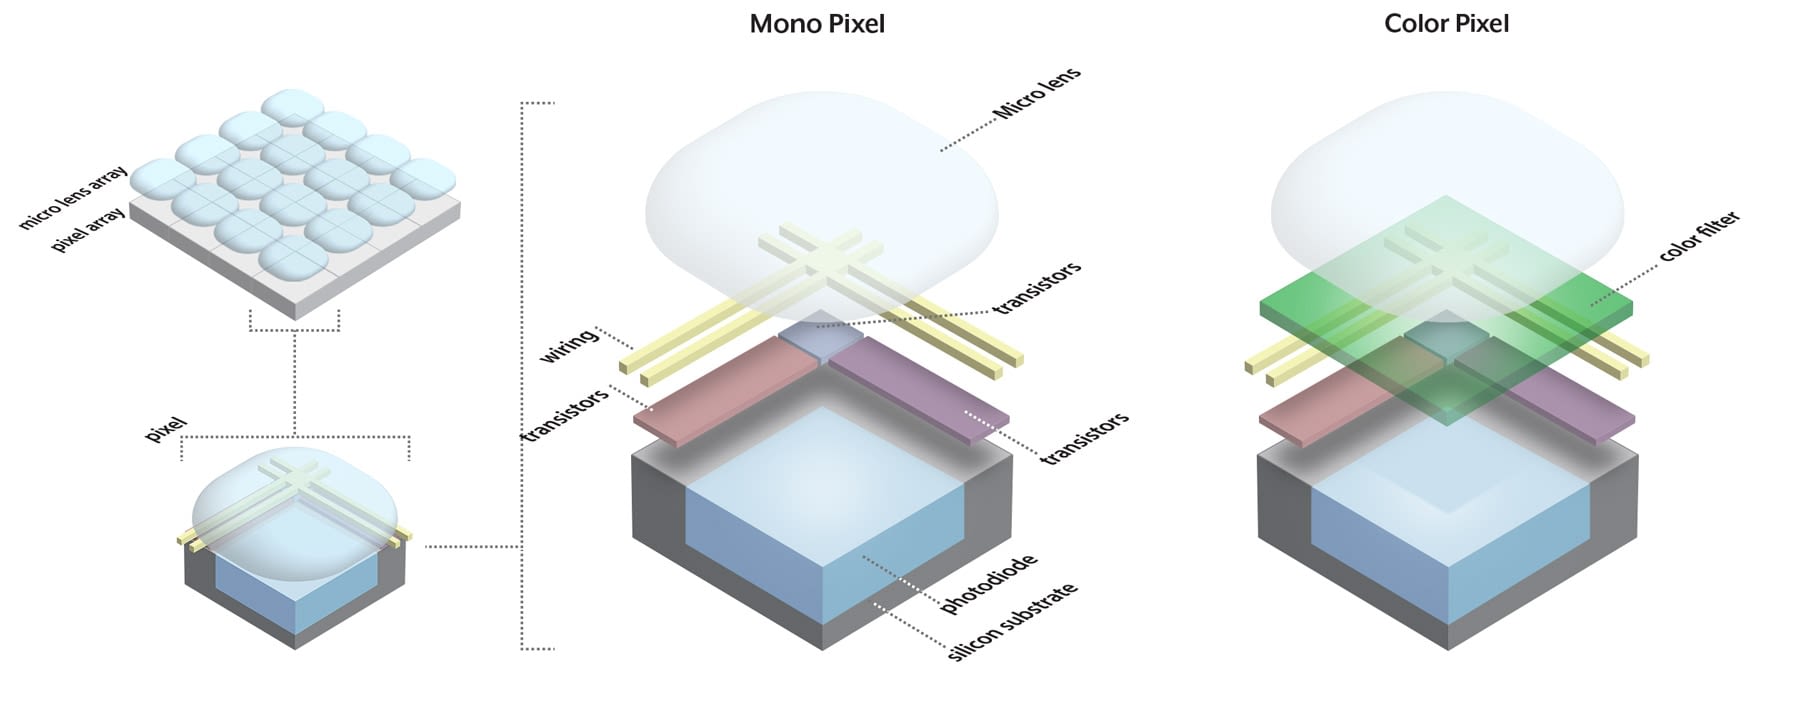 mono vs color pixel in sensor